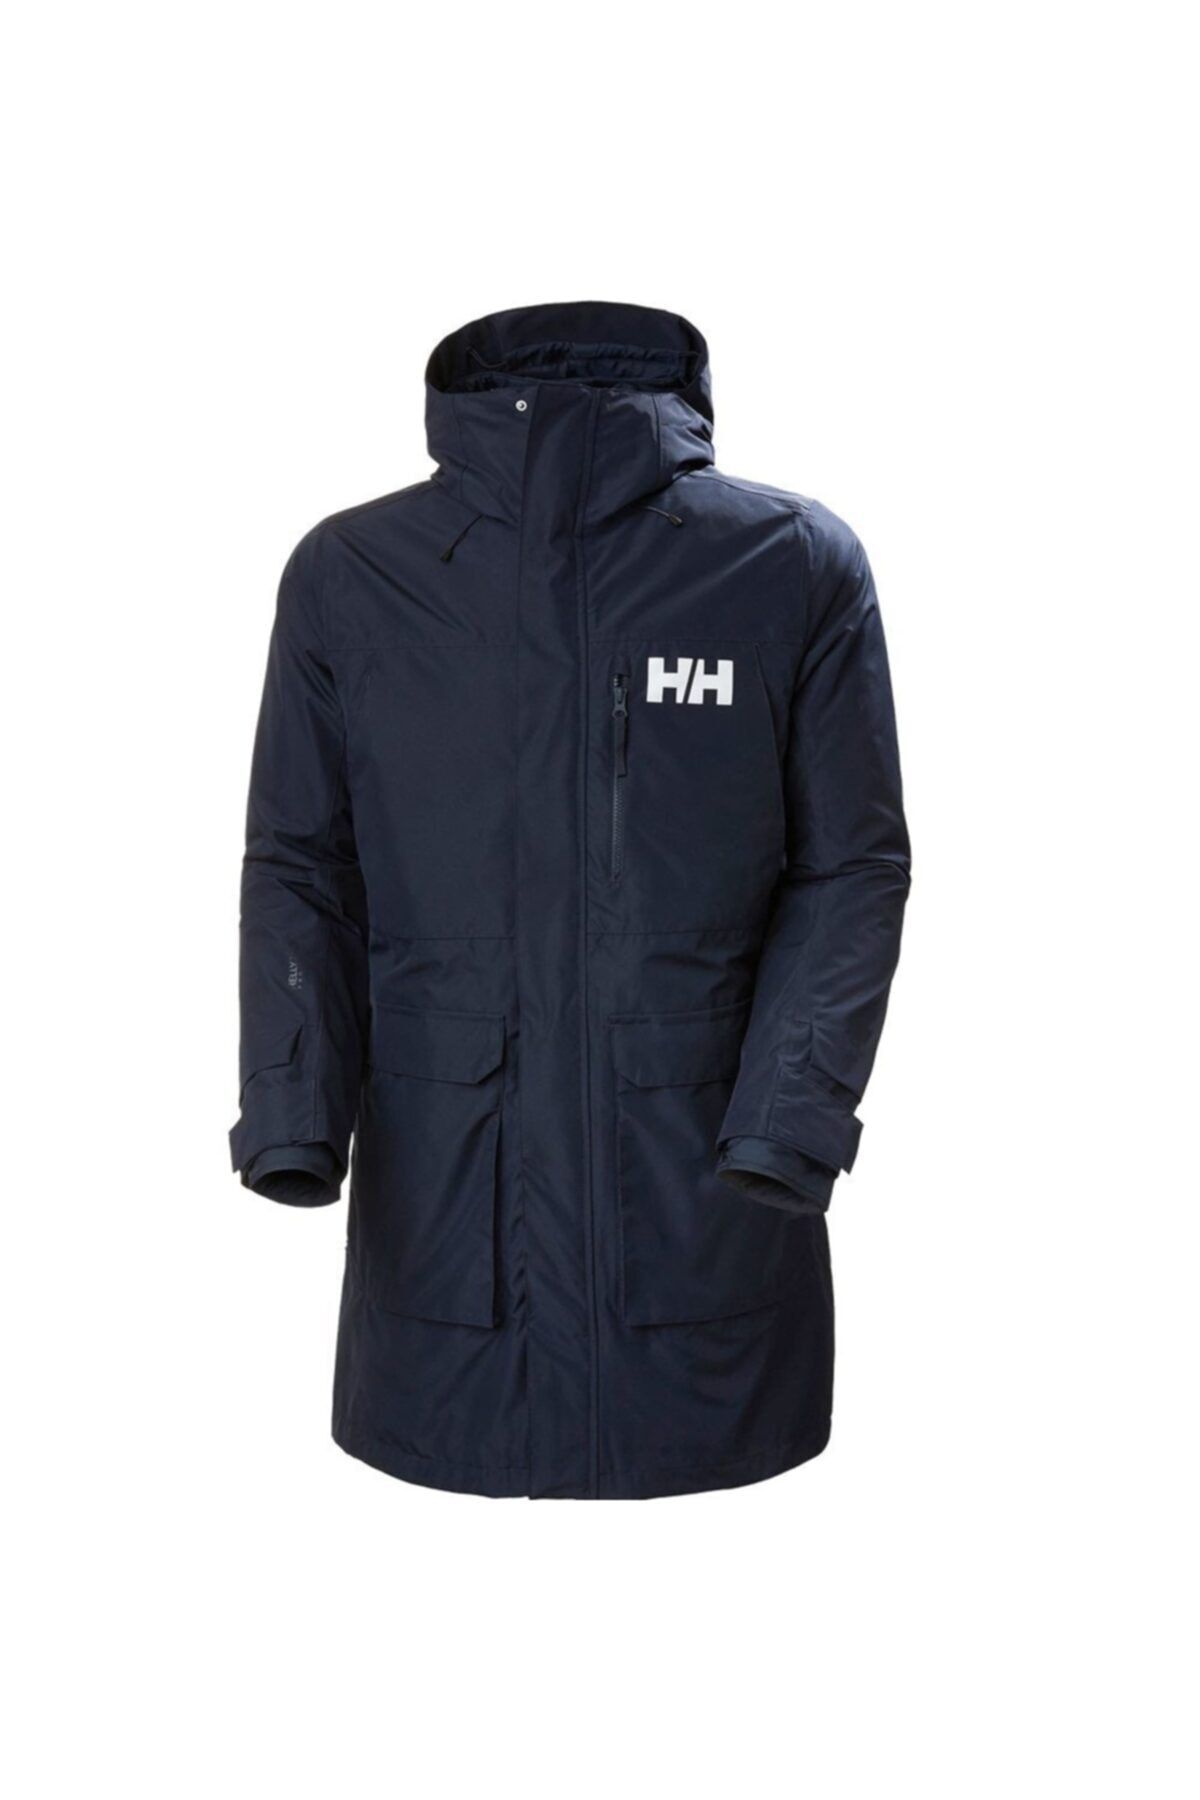 Helly Hansen Rigging Coat Erkek Outdoor Mont